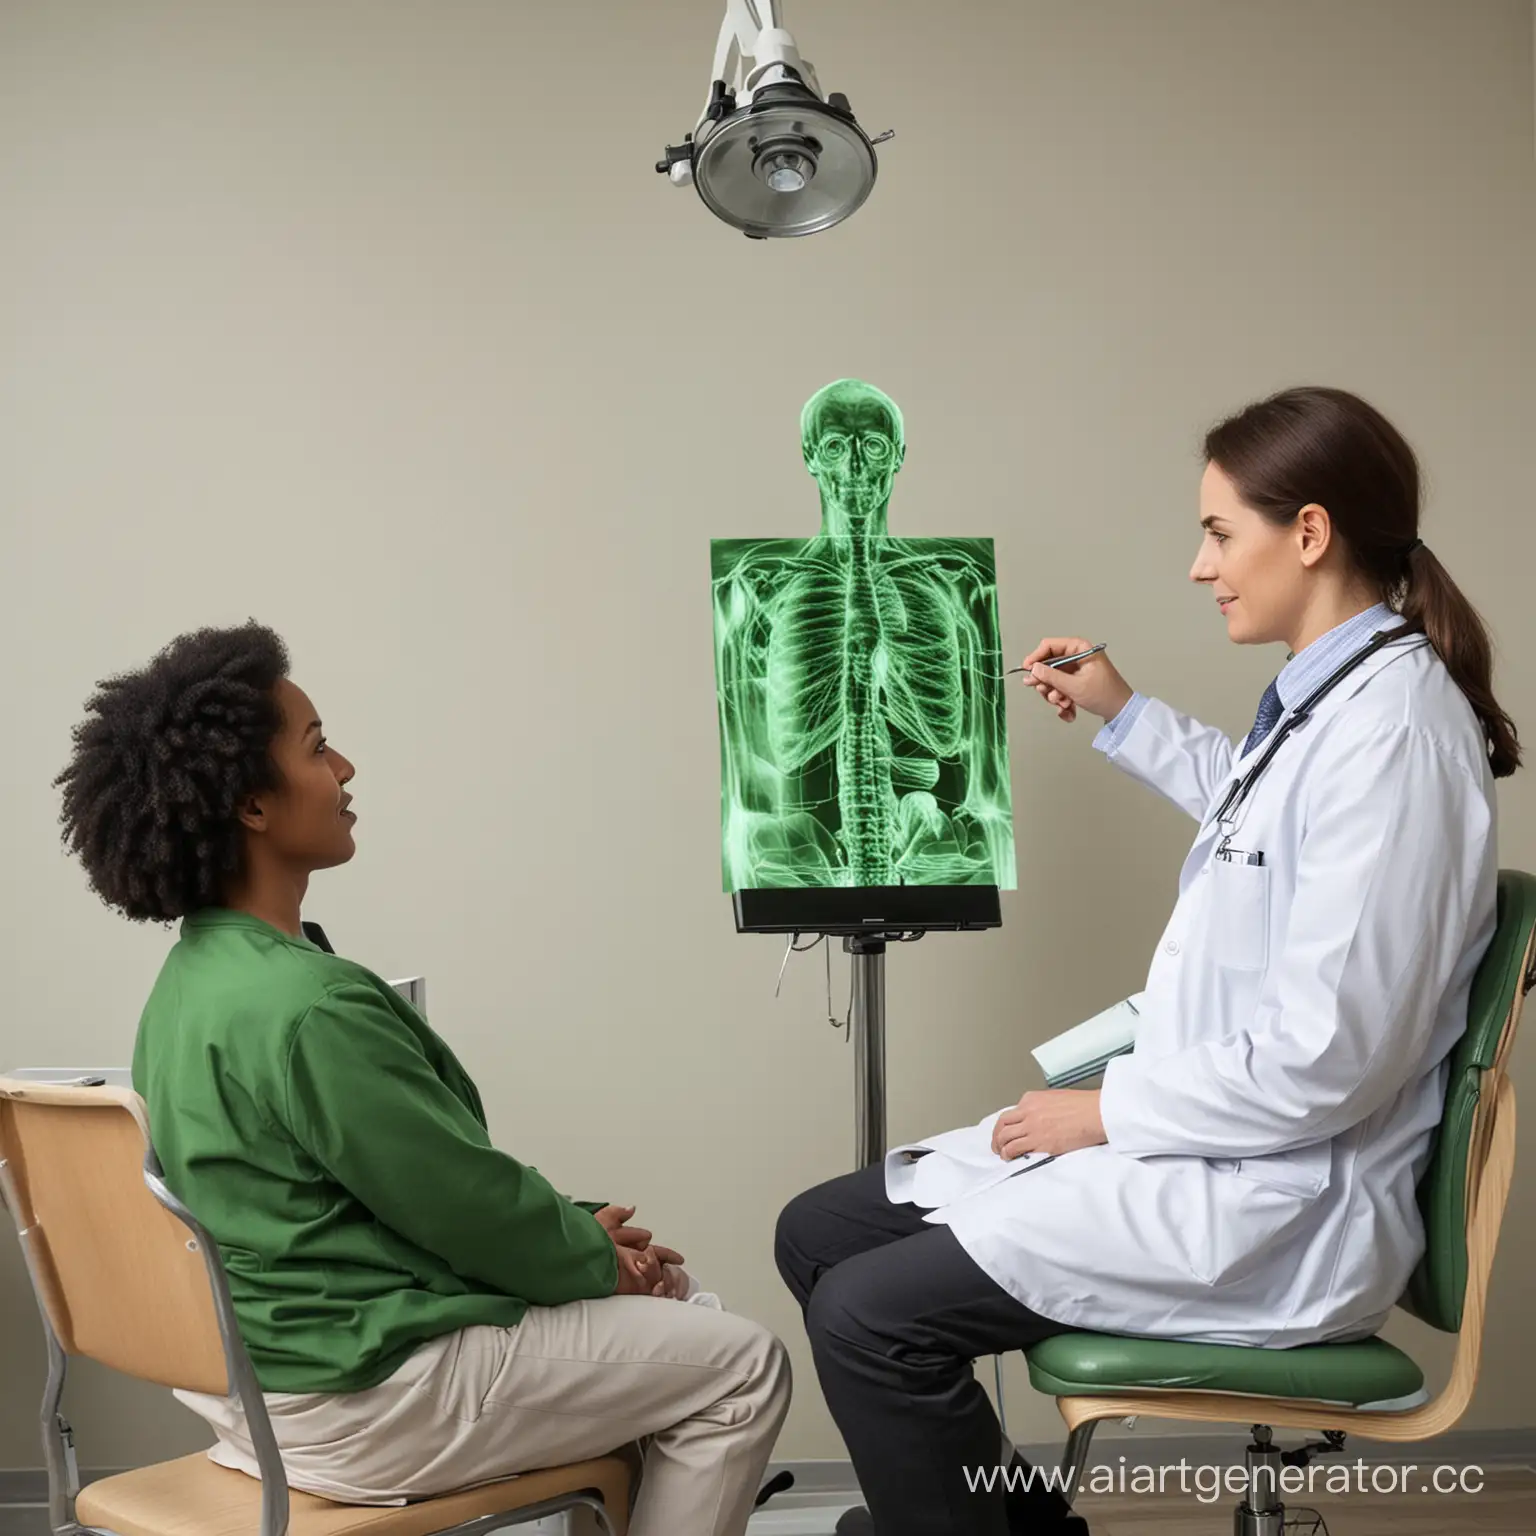 человек сидит на стуле(пациент), рядом сидит доктор, пациент смотрит на зеленую картинку которую в руках держит доктор.